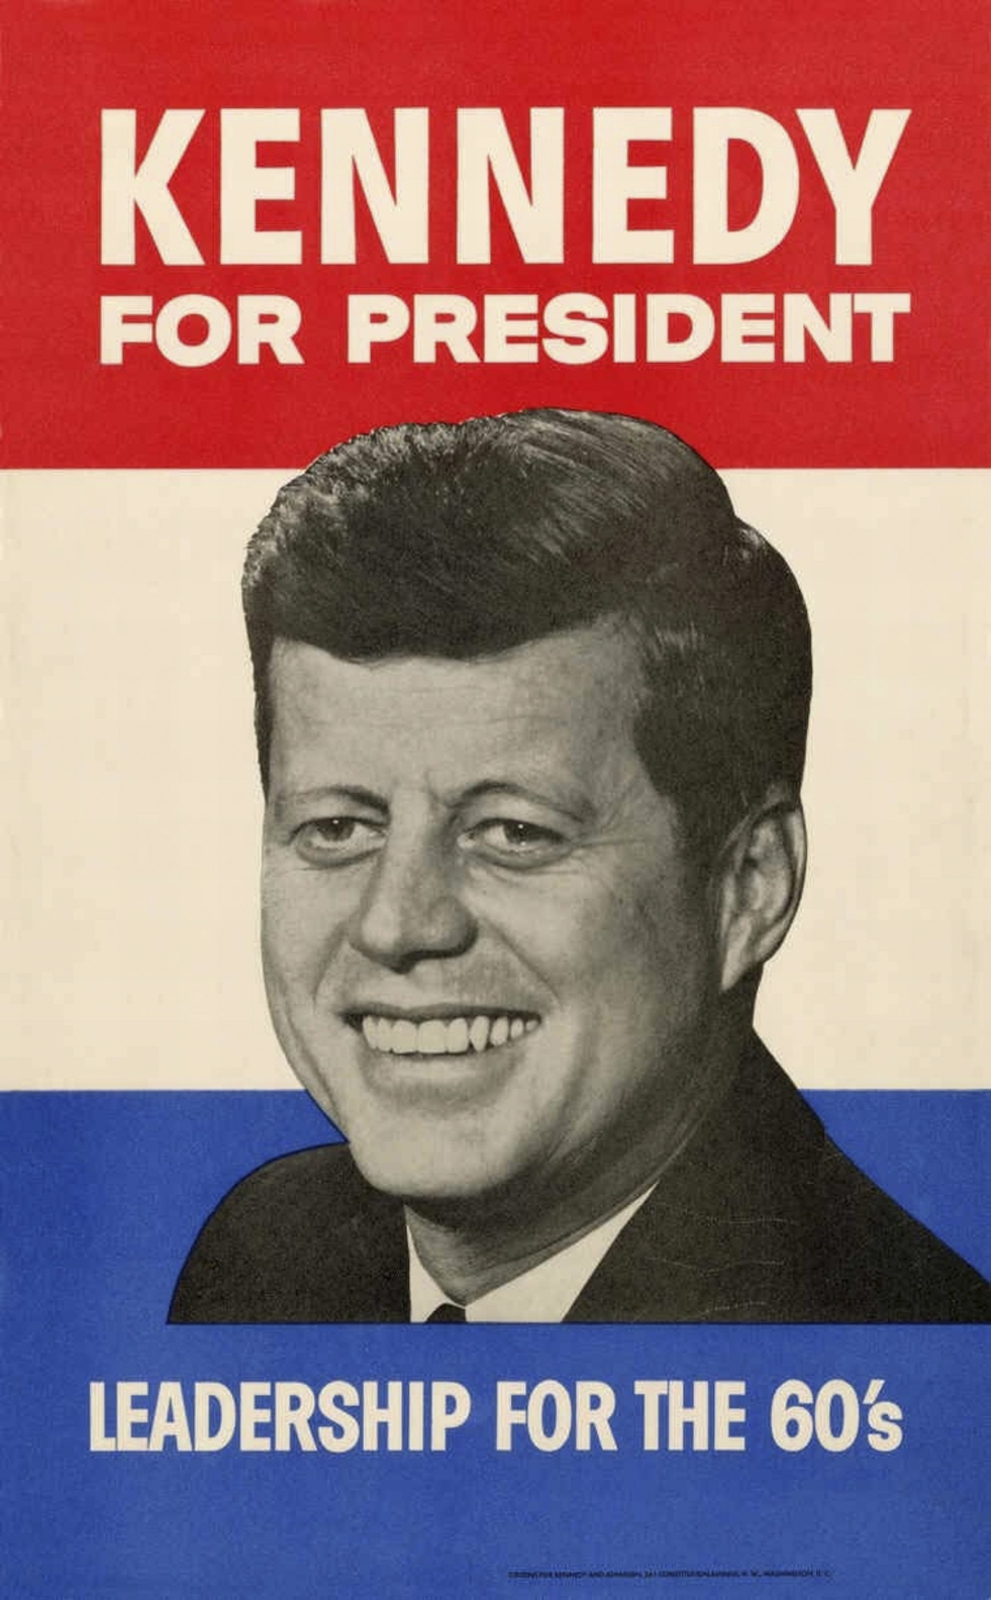 Setna rocznica urodzin Johna F. Kennedy'ego
Fot. PAP/EPA/JOHN F KENNEDY PRESIDENTIAL LIBRARY